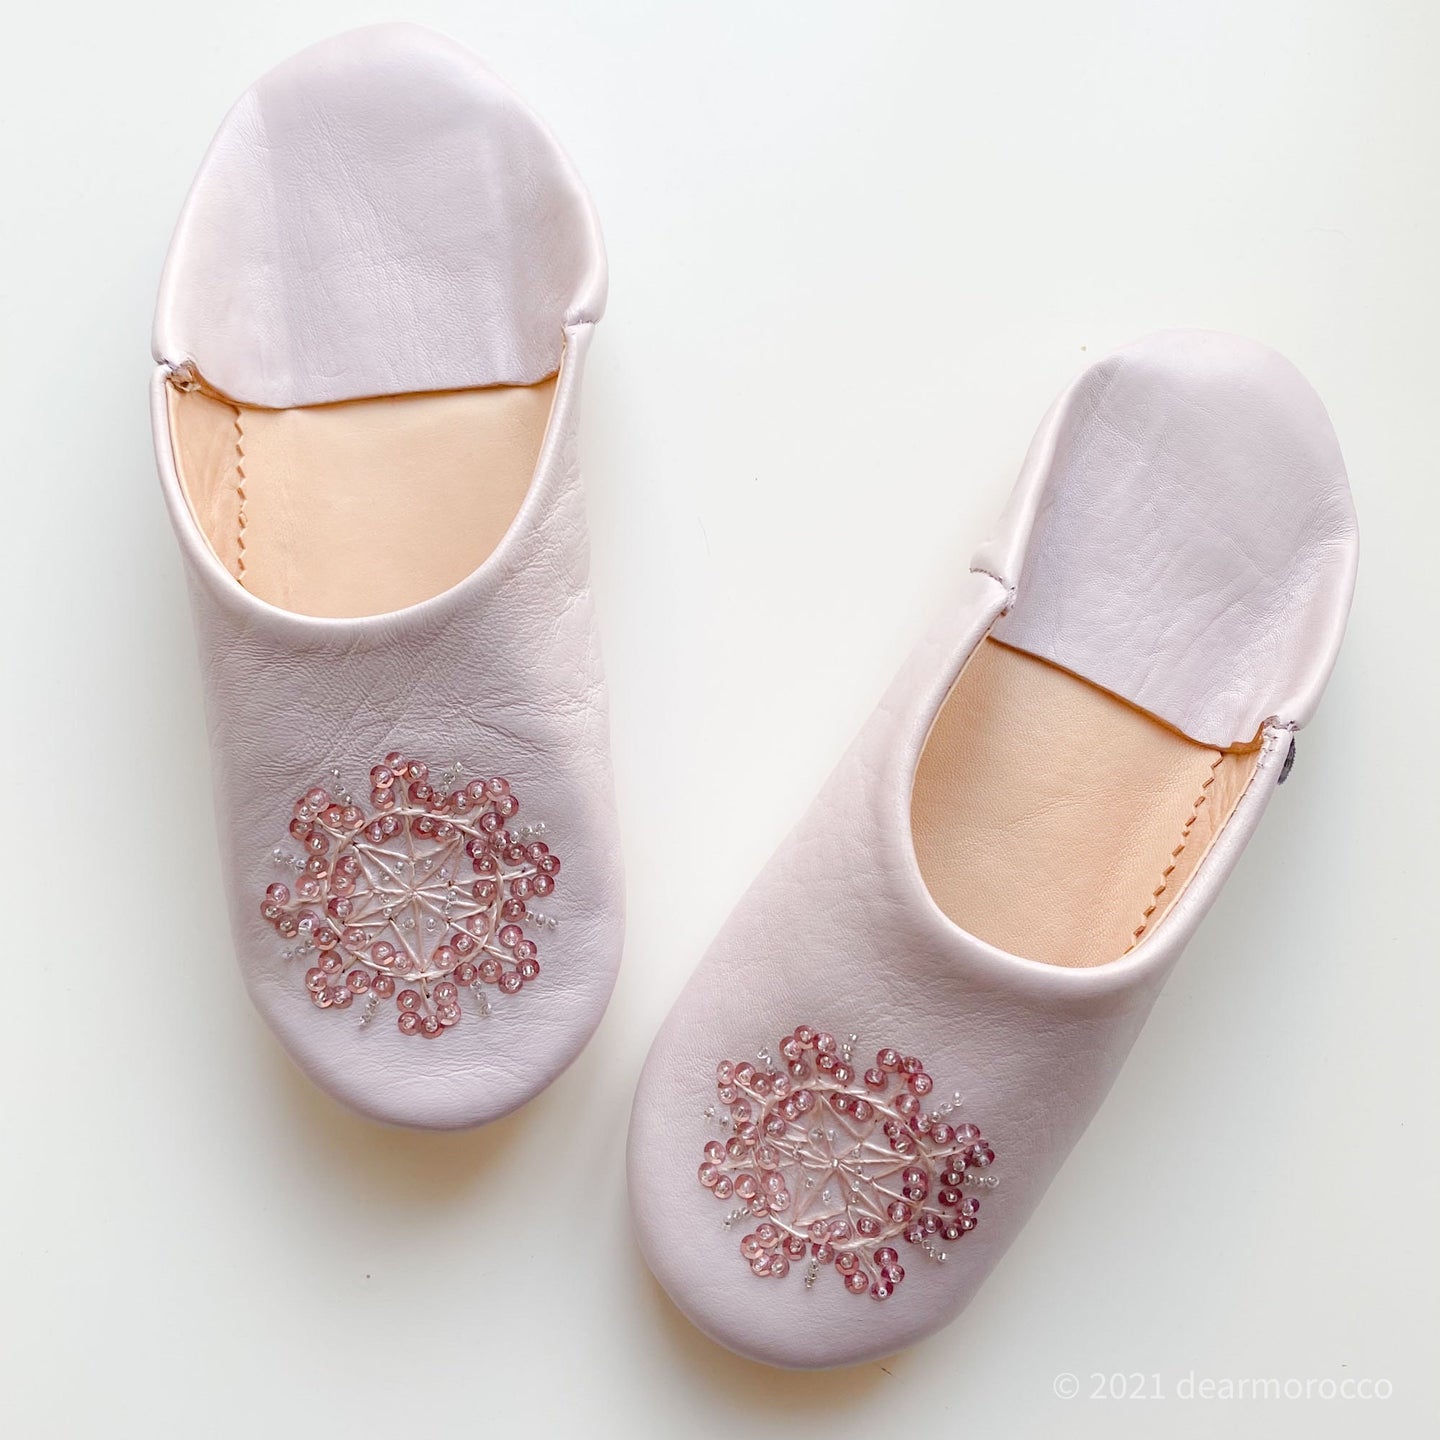 Babouche Stella Lilla// dear Morocco original leather slippers